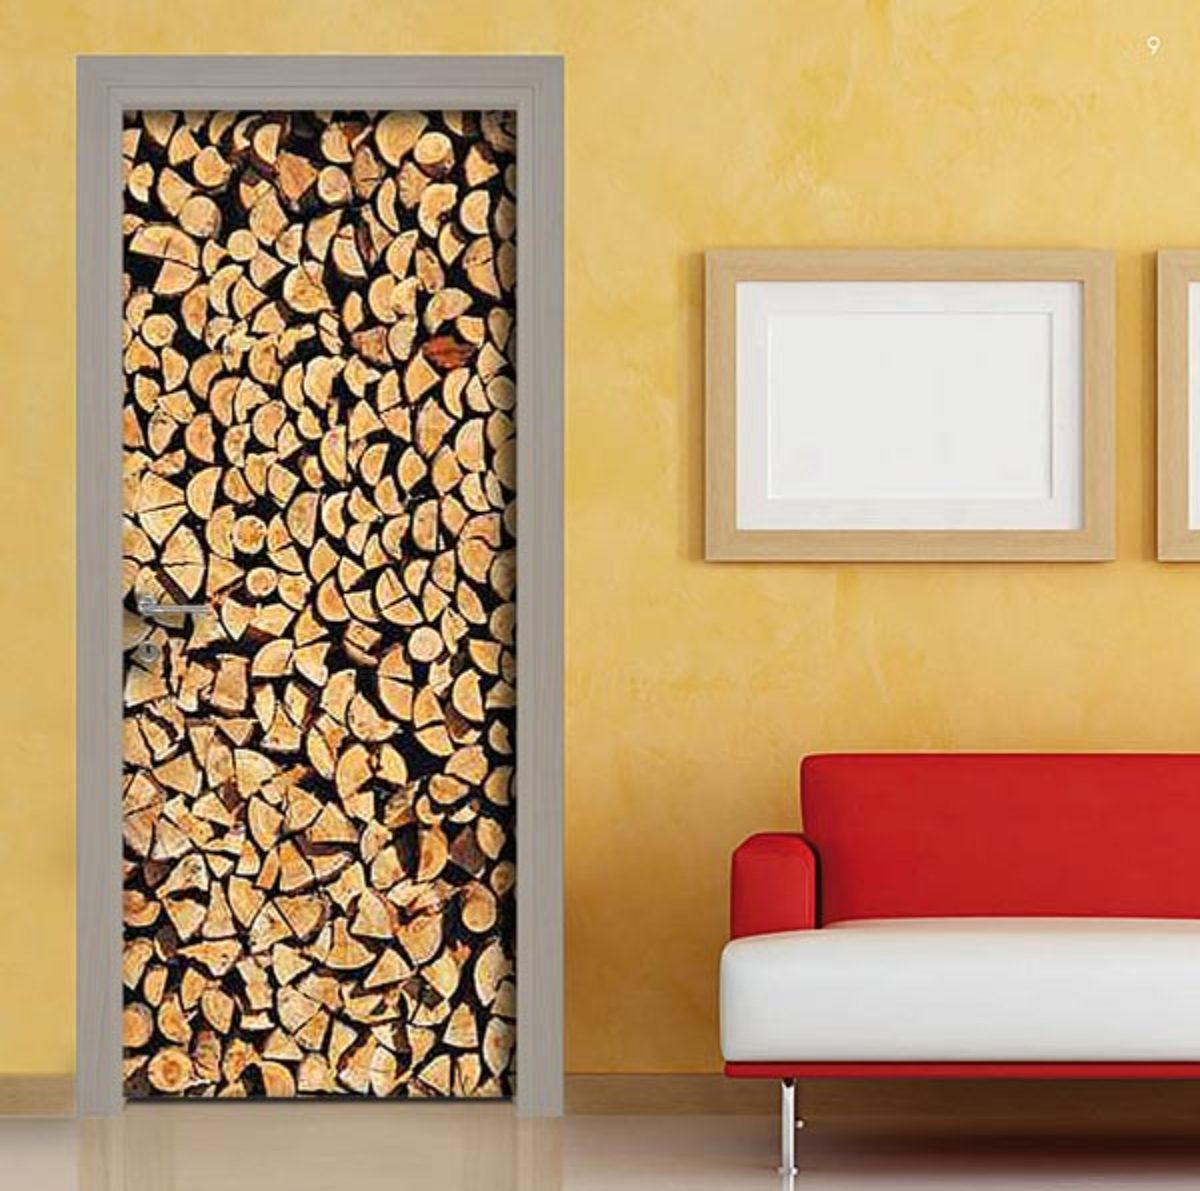 Pellicola adesiva – catasta di legna per rivestimento porta